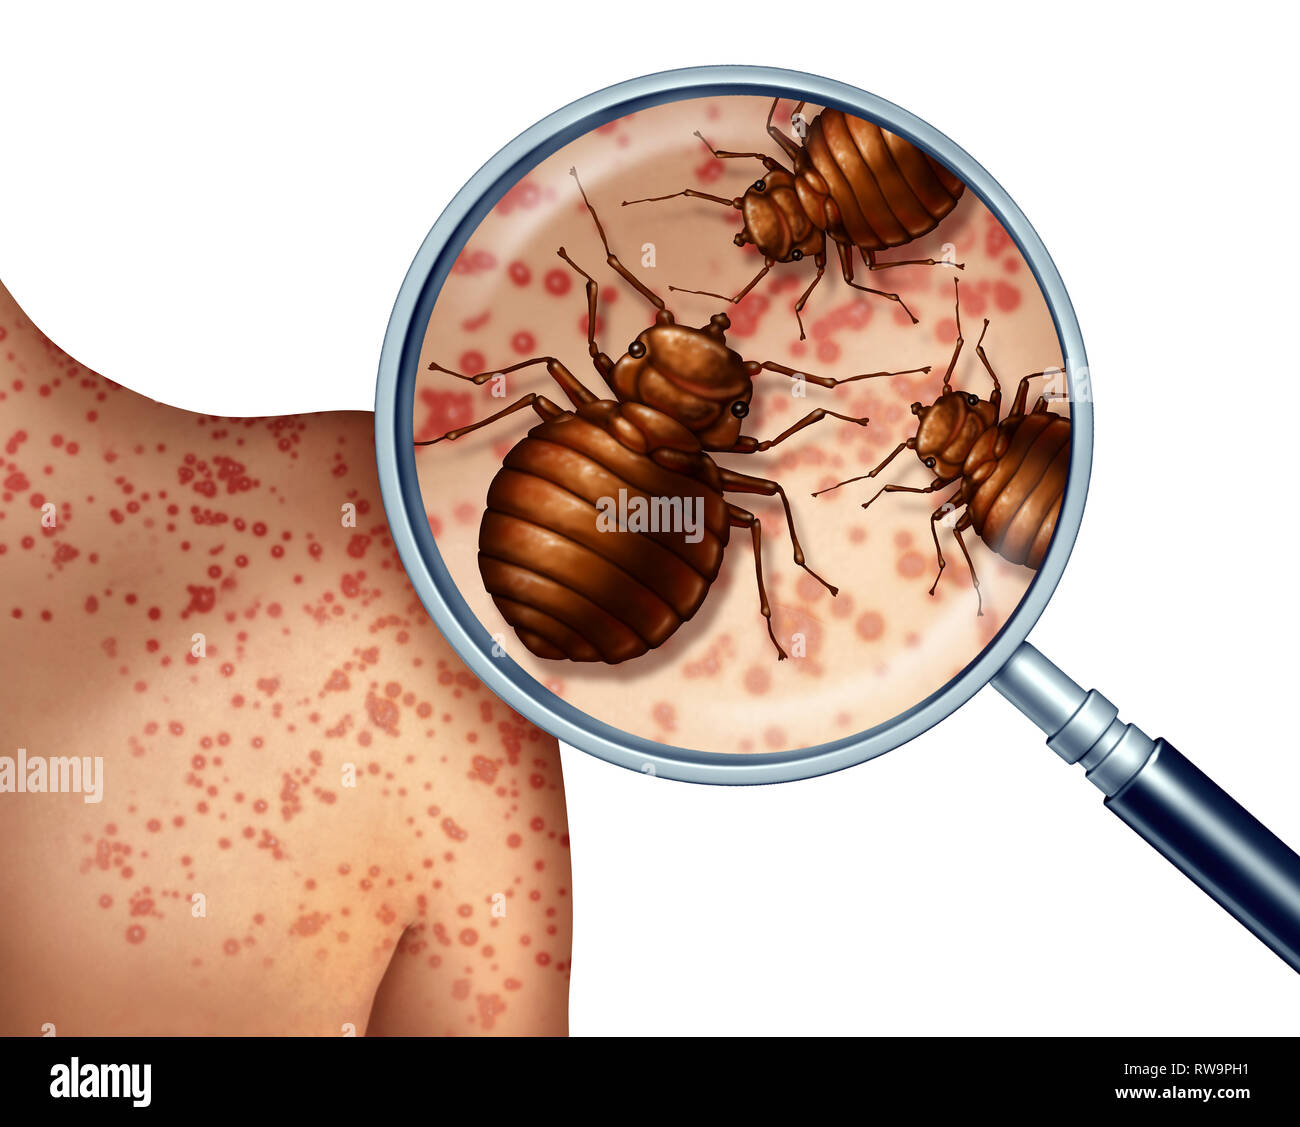 Bettwanzen auf die menschliche Haut oder wanze Befall Konzept als Vergrößerung der parasitäre Insekten als Symbol für Hygiene und Gesundheit. Stockfoto